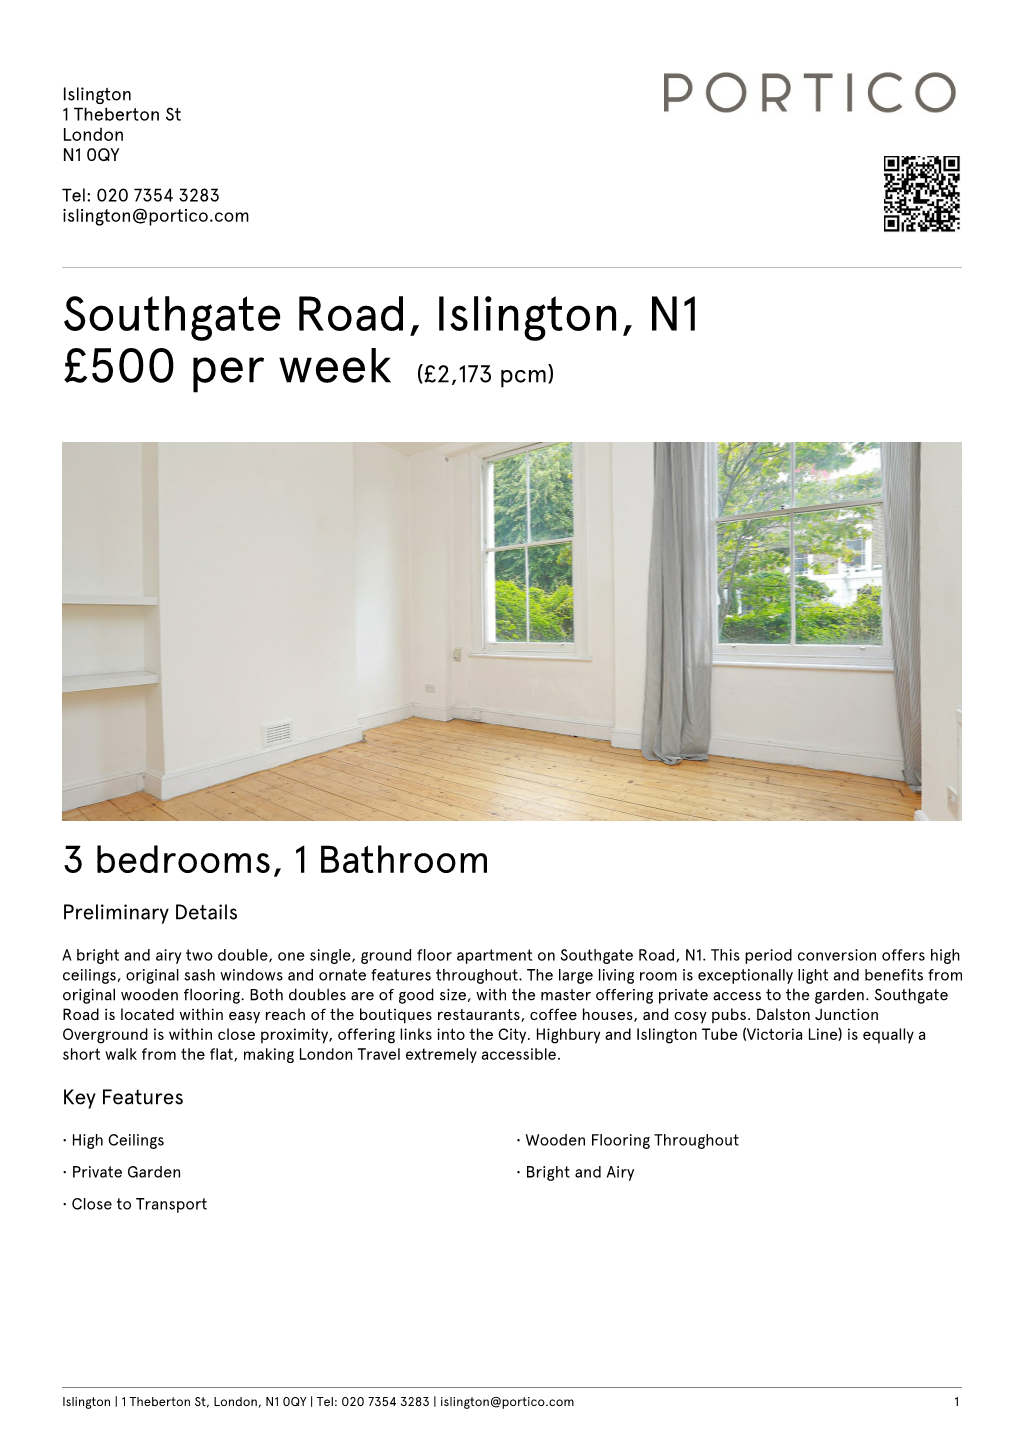 Southgate Road, Islington, N1 £500 Per Week